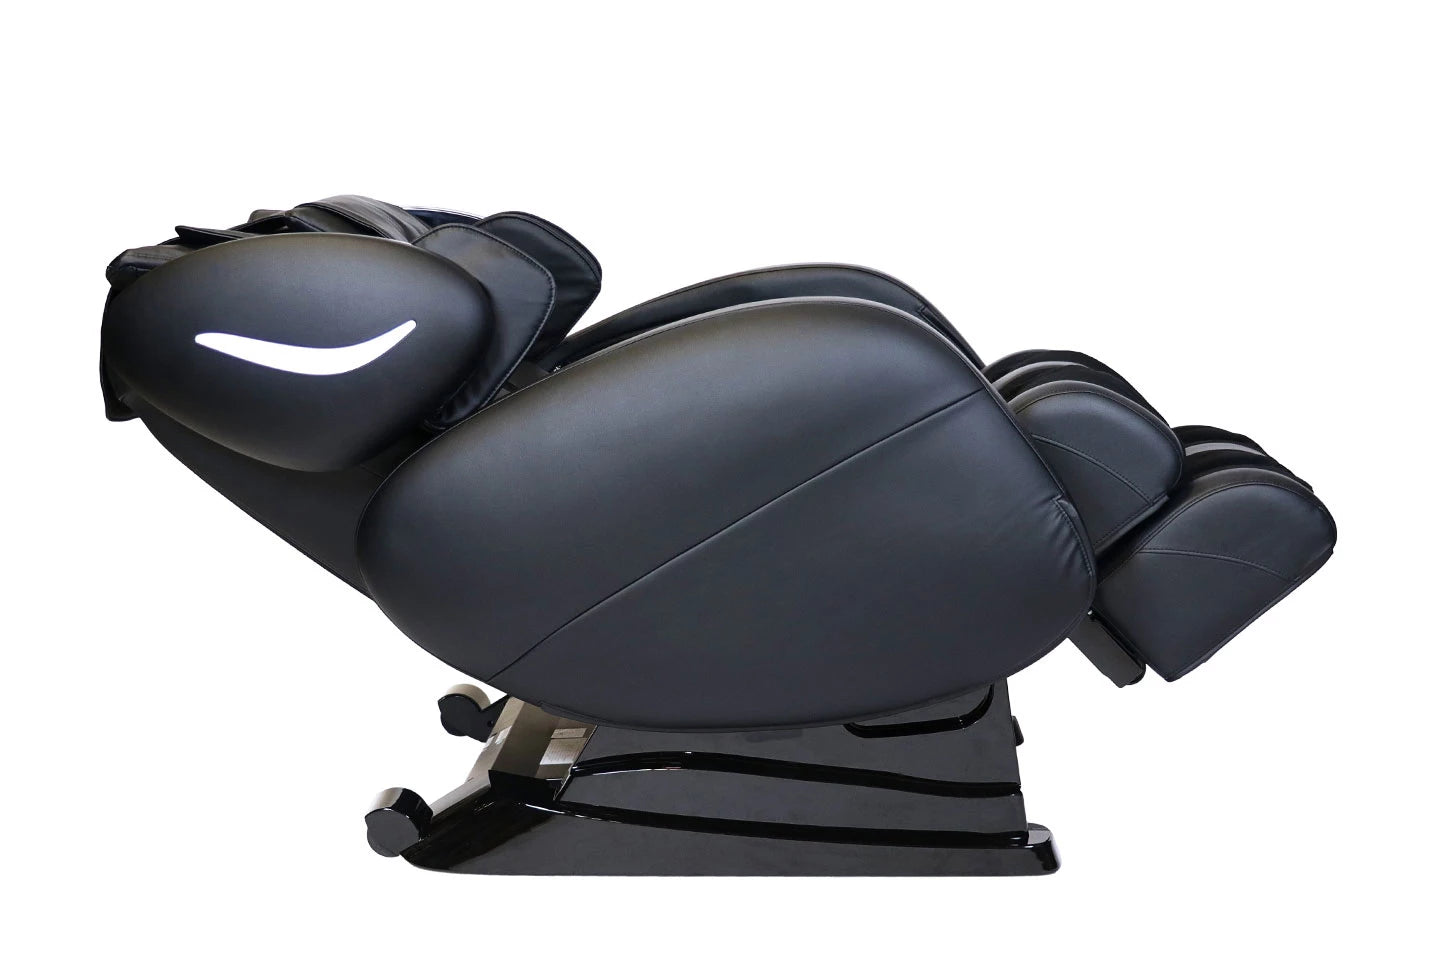 Infinity Smart Chair X3 3D/4D Massage Chair - 18306301